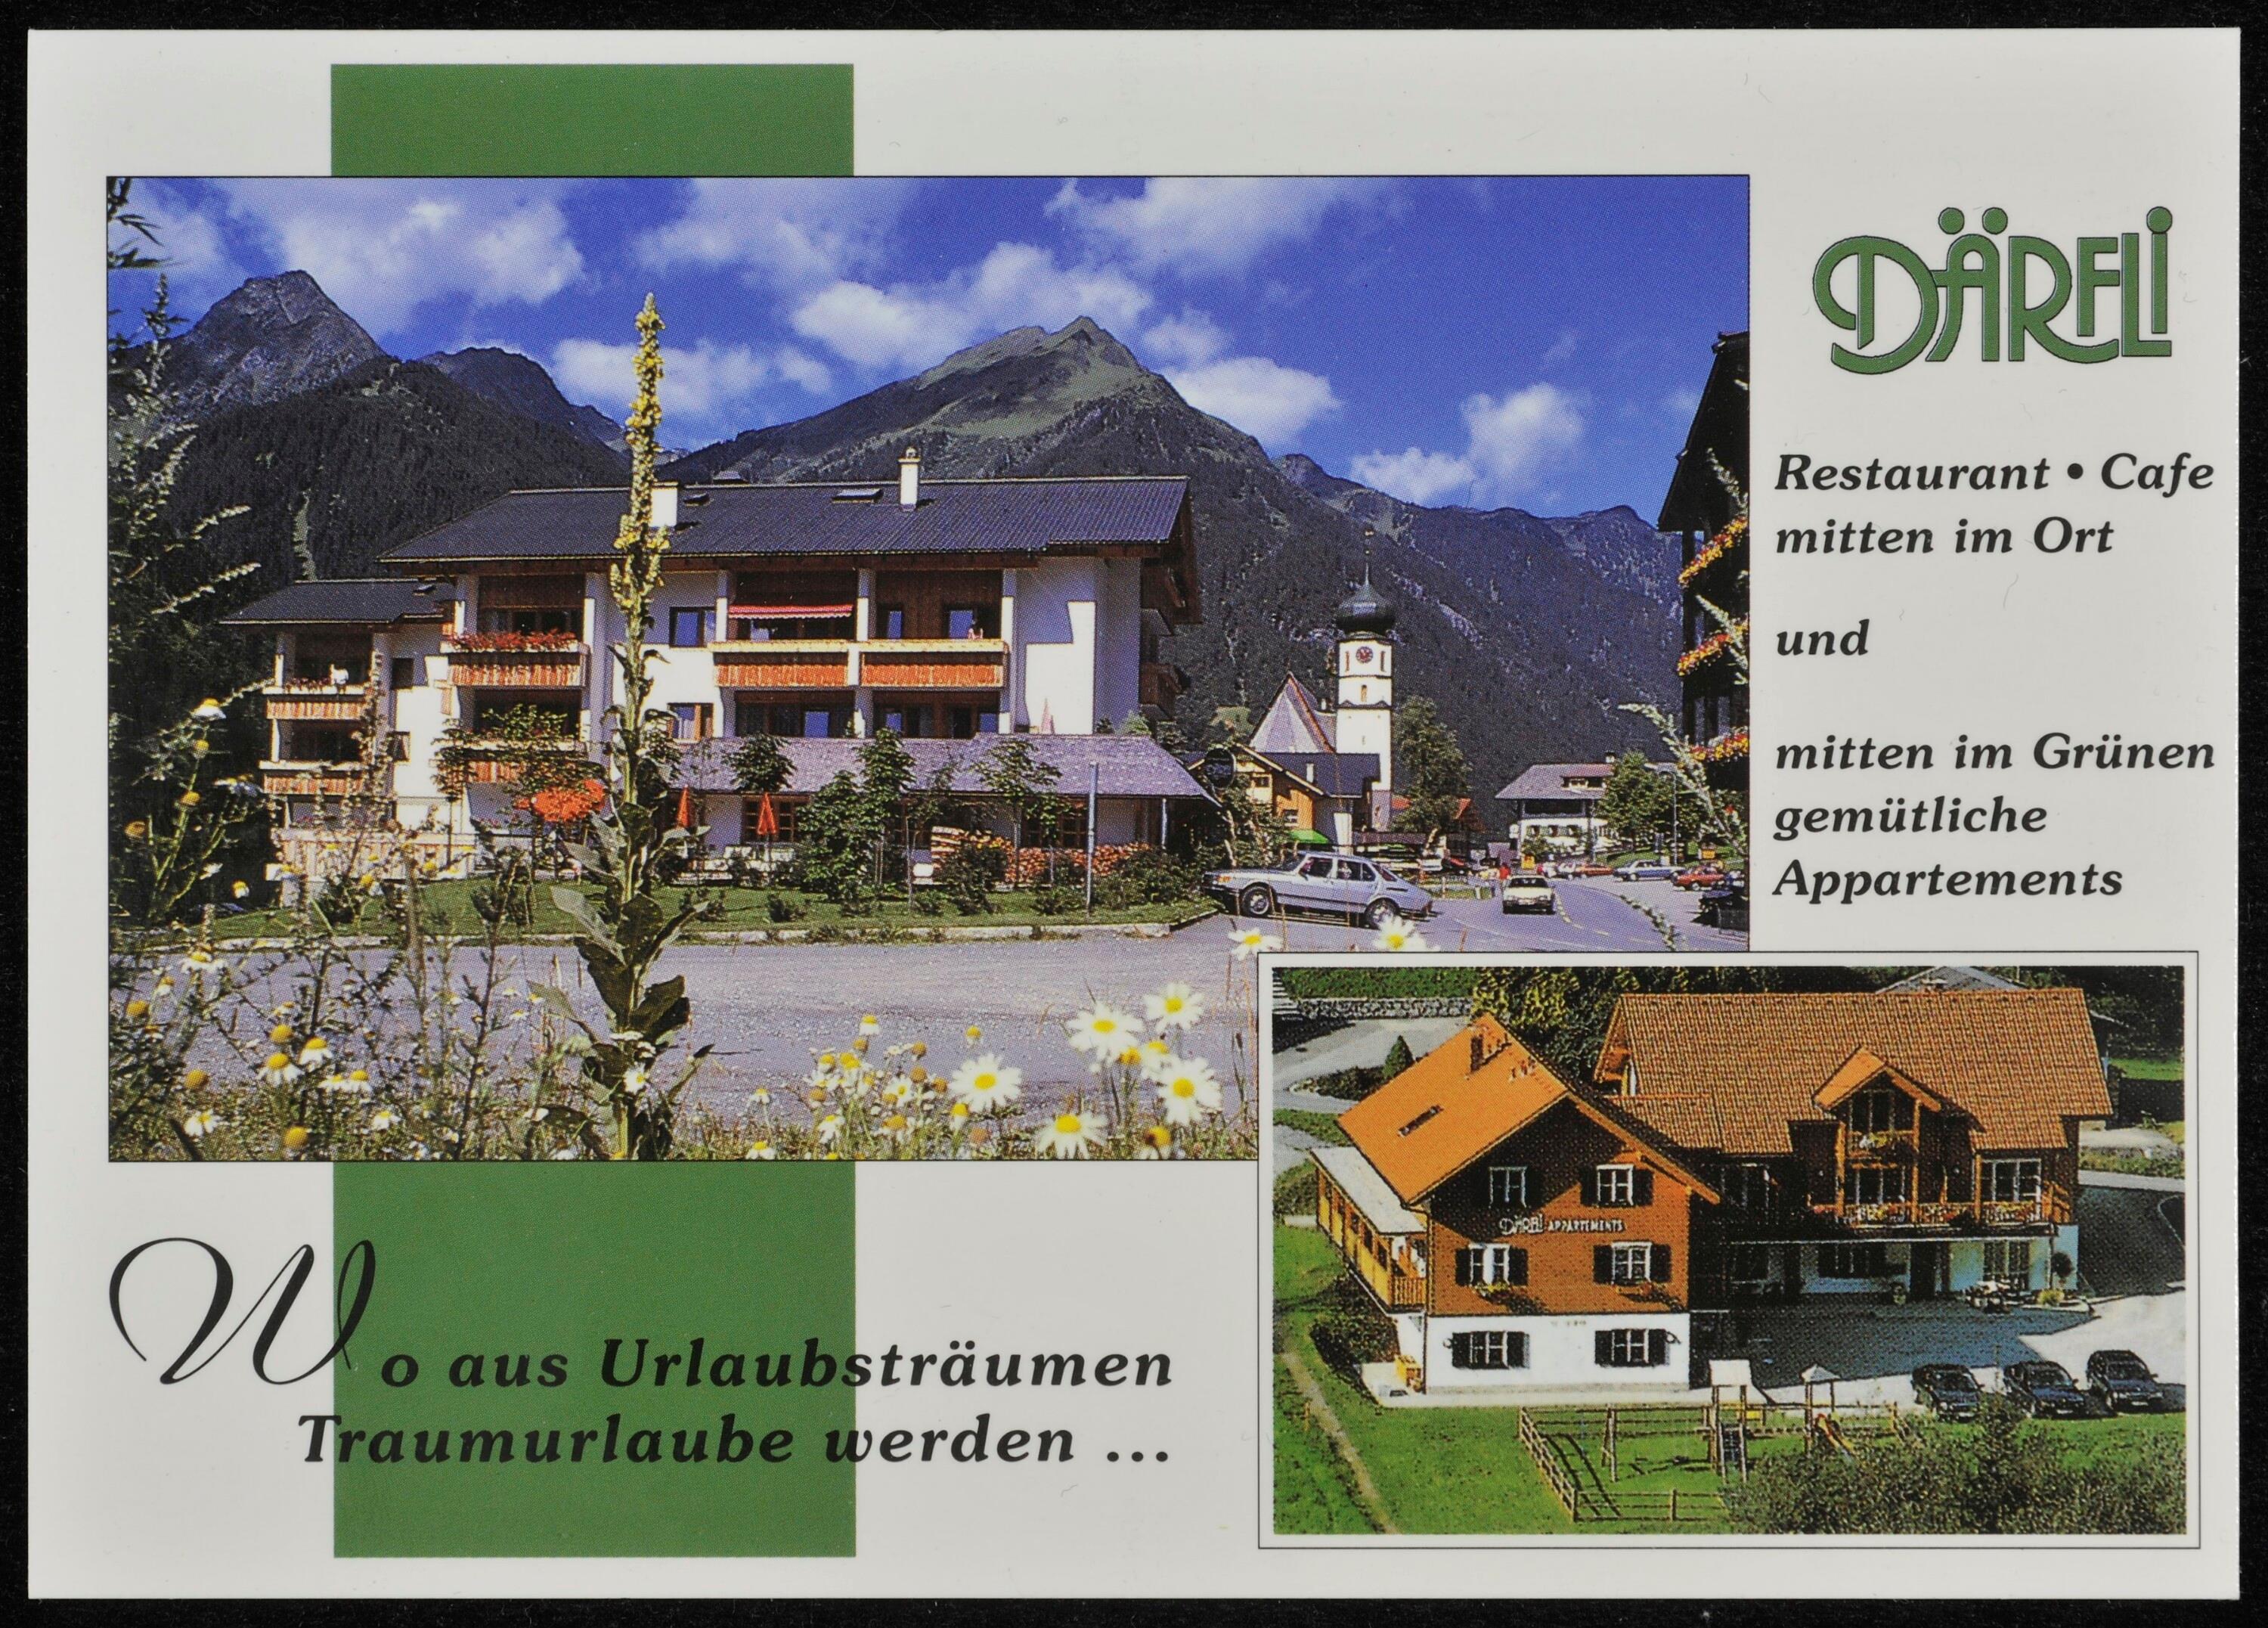 [St. Gallenkirch] Därfli Restaurant - Cafe mitten im Ort und mitten im Grünen gemütliche Appartements></div>


    <hr>
    <div class=